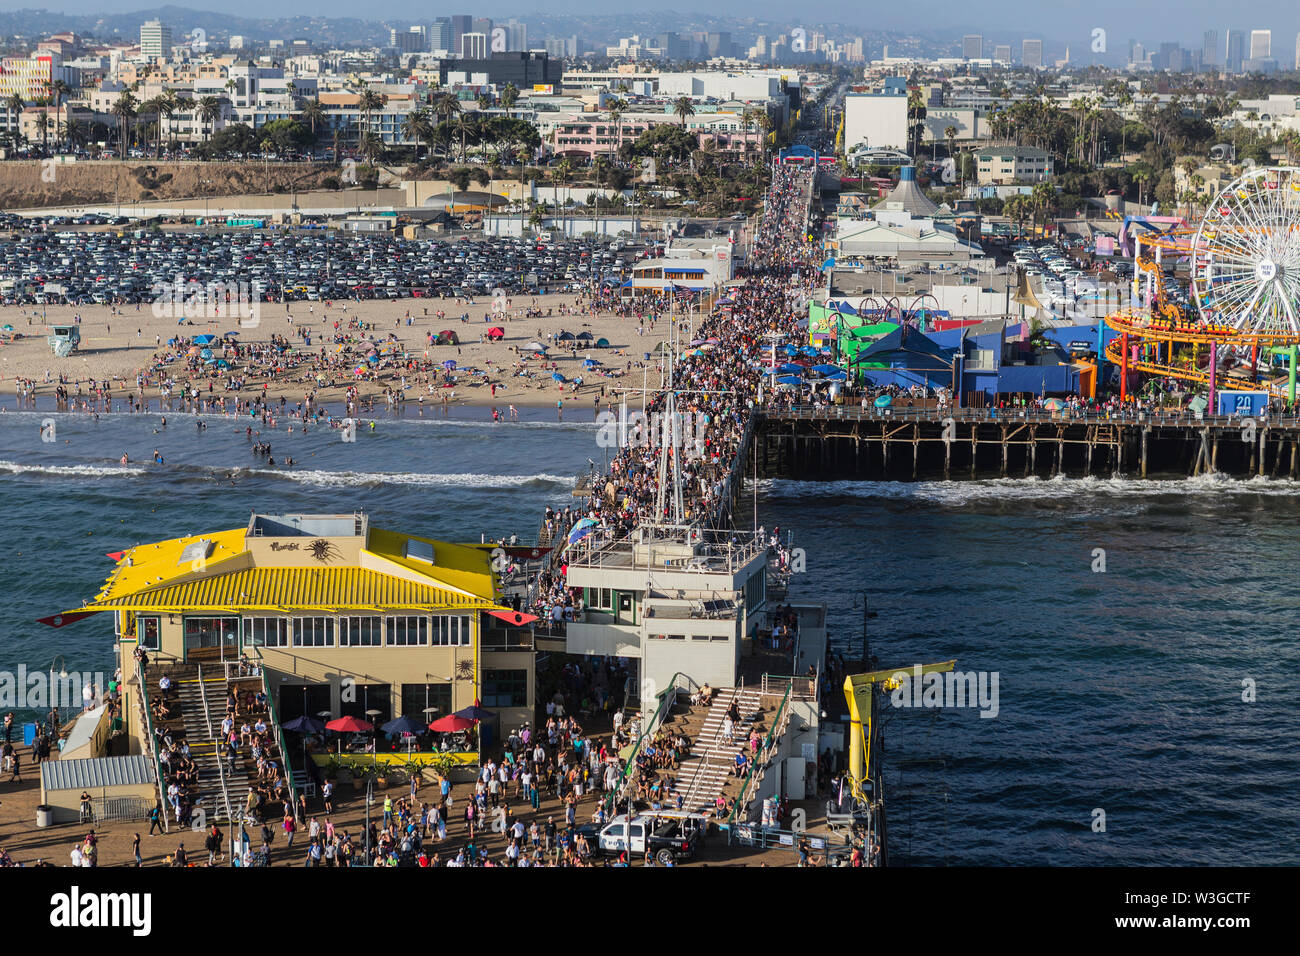 Santa Monica, Californie, USA - 6 août 2016 : des foules de gens populaires sur la jetée de Santa Monica, près de Los Angeles. Banque D'Images